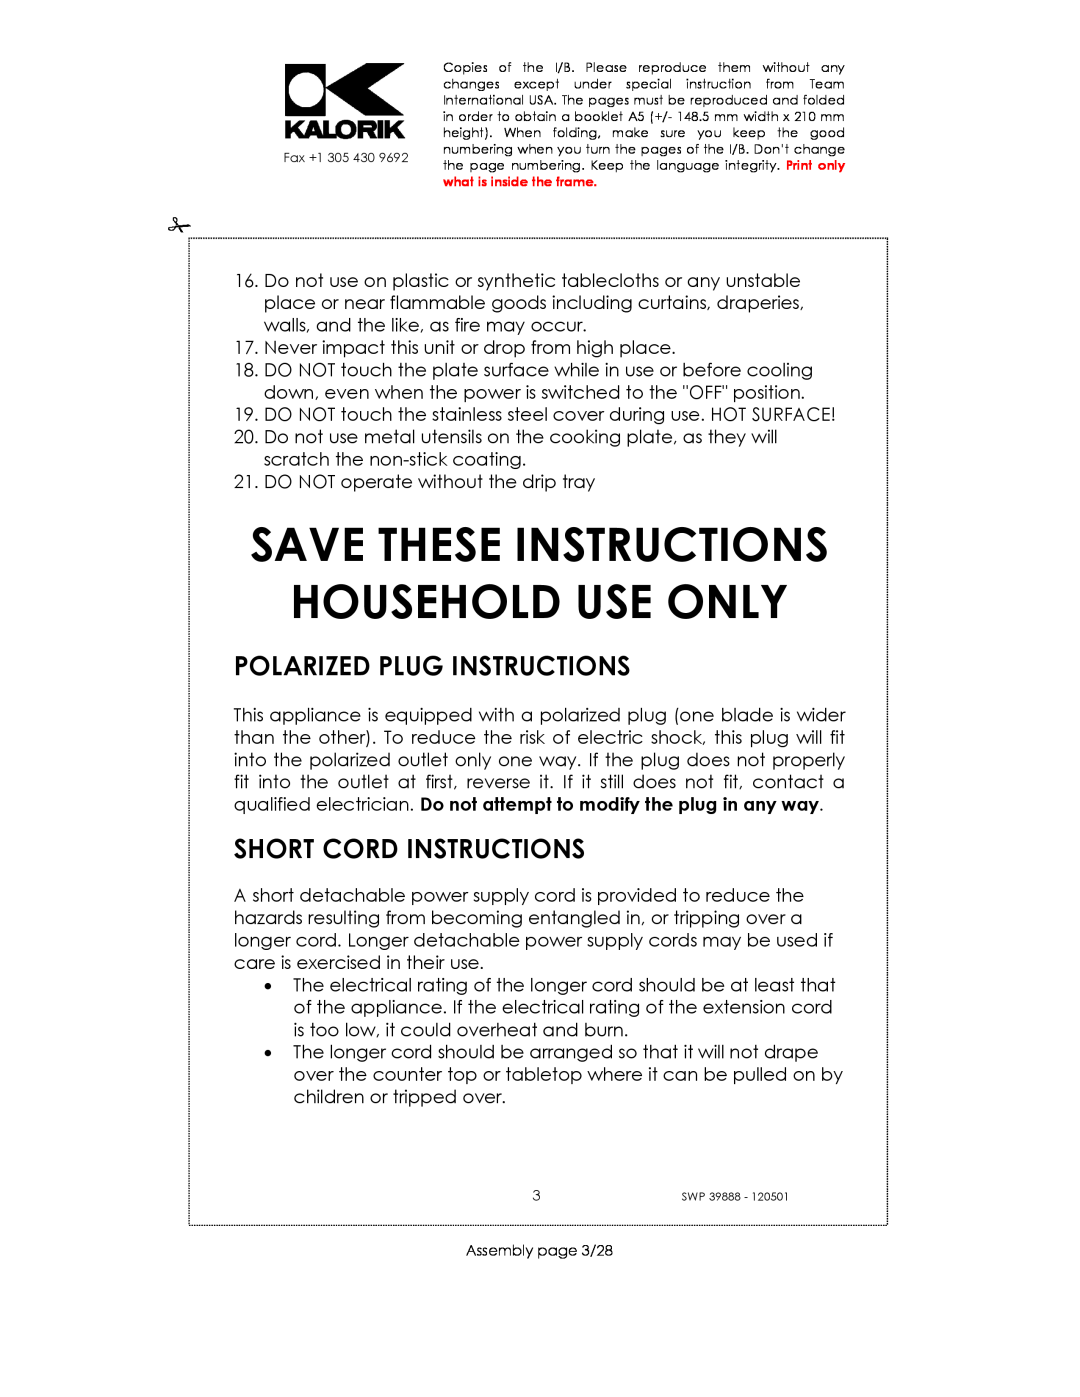 Kalorik SWP 39888 manual Polarized Plug Instructions, Short Cord Instructions, Save These Instructions Household Use Only 